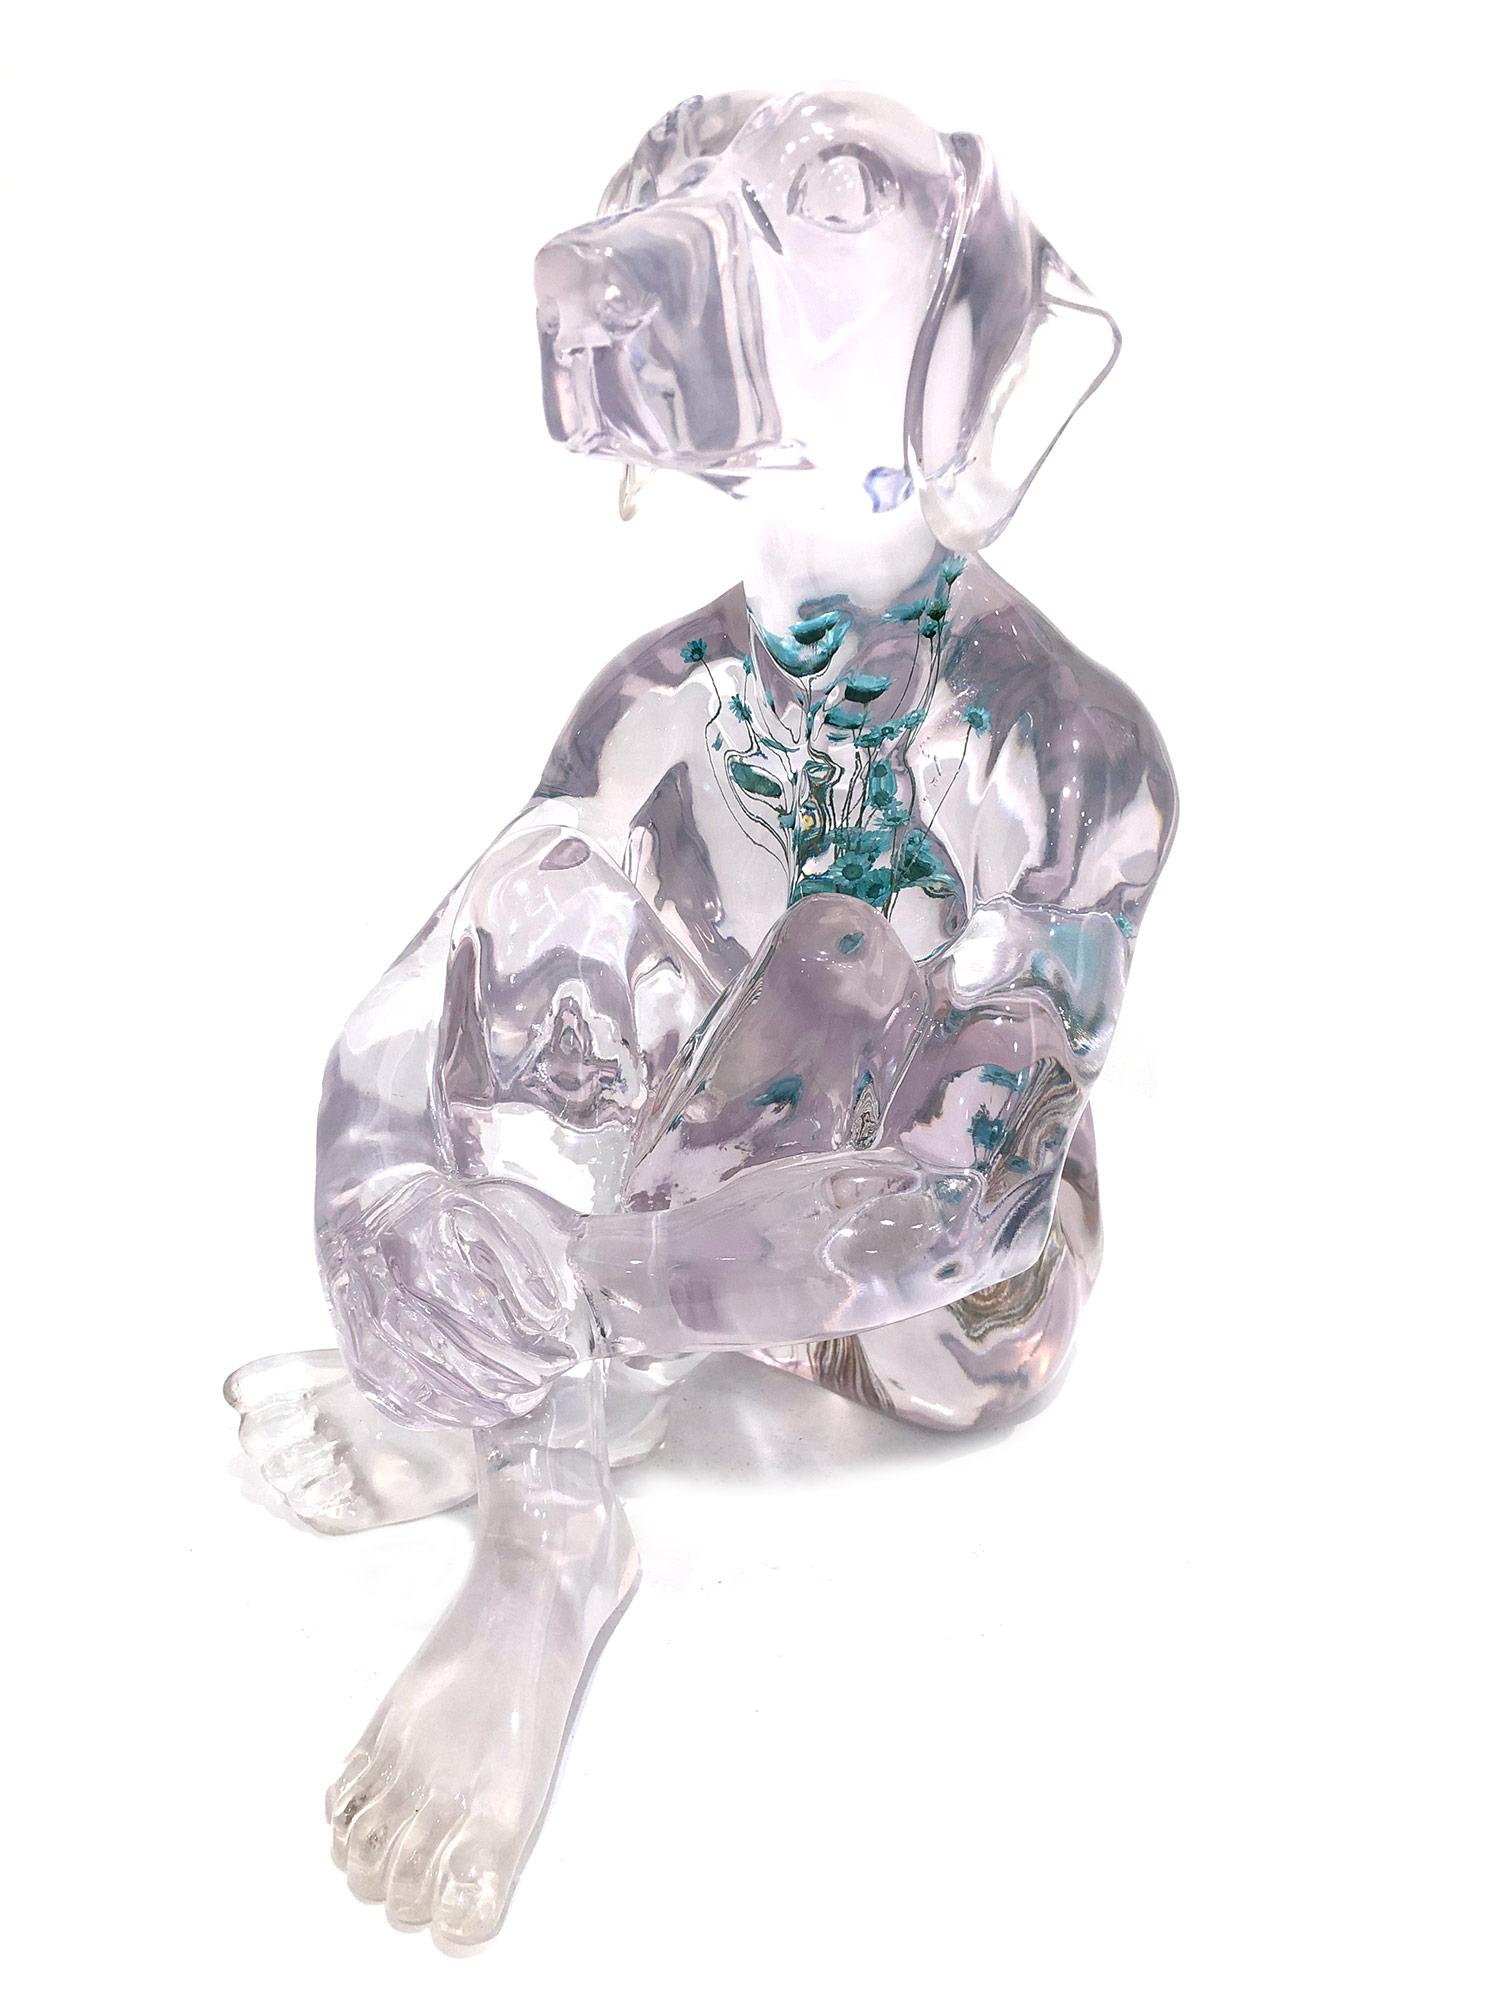 Gillie and Marc Schattner Figurative Sculpture – „Er hatte reine Gedanken mit blauen Blumen“ Hunde-Skulptur aus Harz mit Blumen 